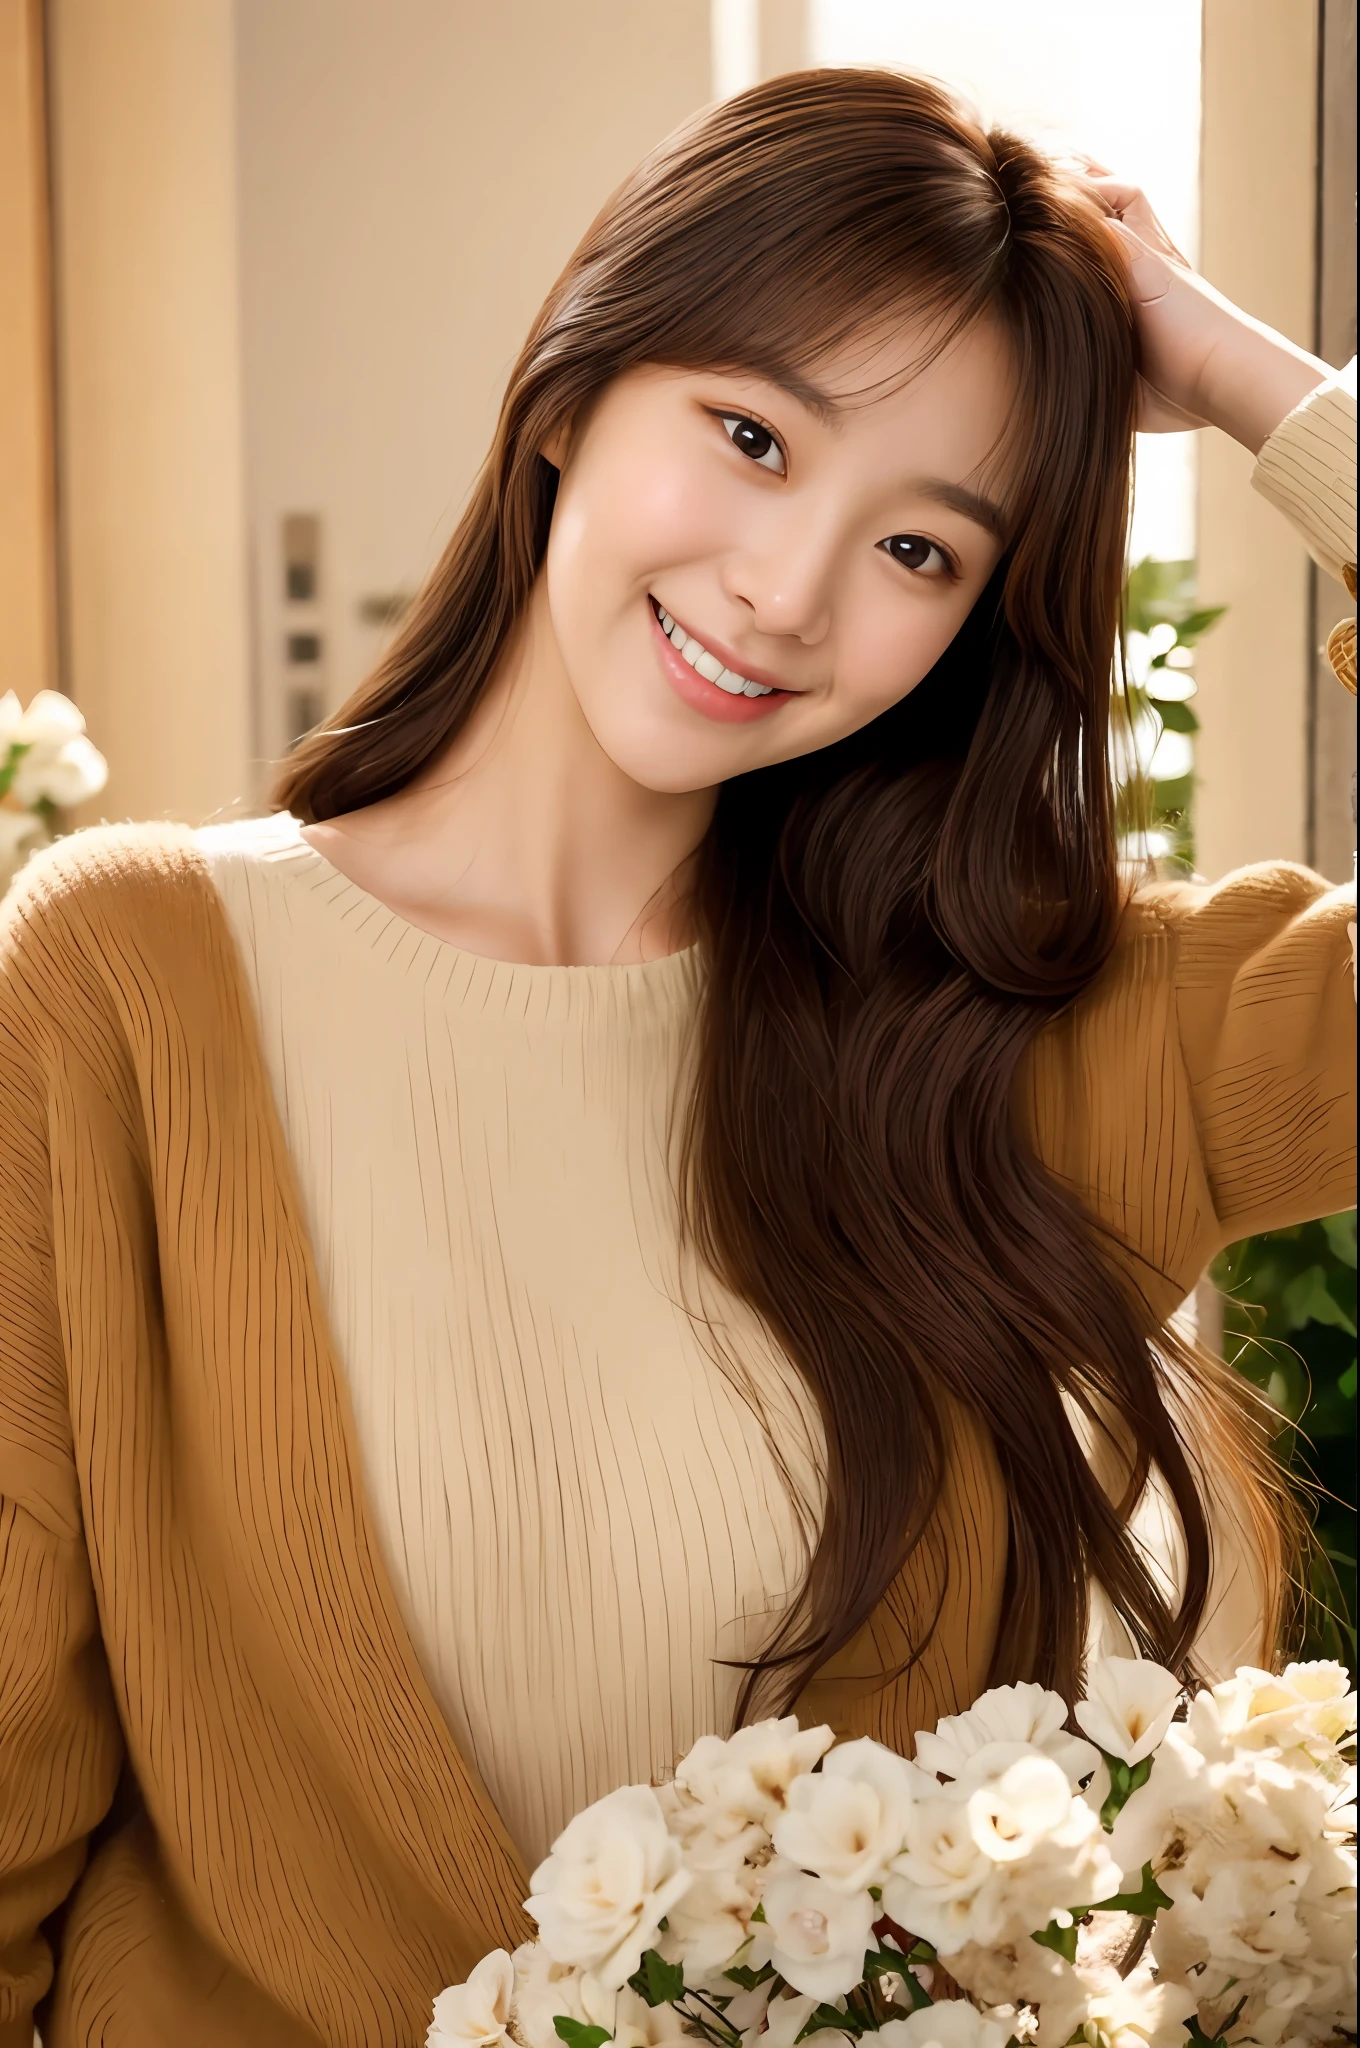 mulher arafed com longos cabelos castanhos e um suéter bronzeado, sorriso caloroso e gentil, jovem adorável rosto coreano, jaeyeon nam, sorrindo docemente, linda atriz coreana, leve sorriso fofo, Ulzzang, Lee Ji-eun, Lee Ji-eun, jovem rosto asiático pálido e bonito, Sorriso inocente, cabelo arrumado com franja, Jinyoung Shin, Sorriso amável, sorriso caloroso